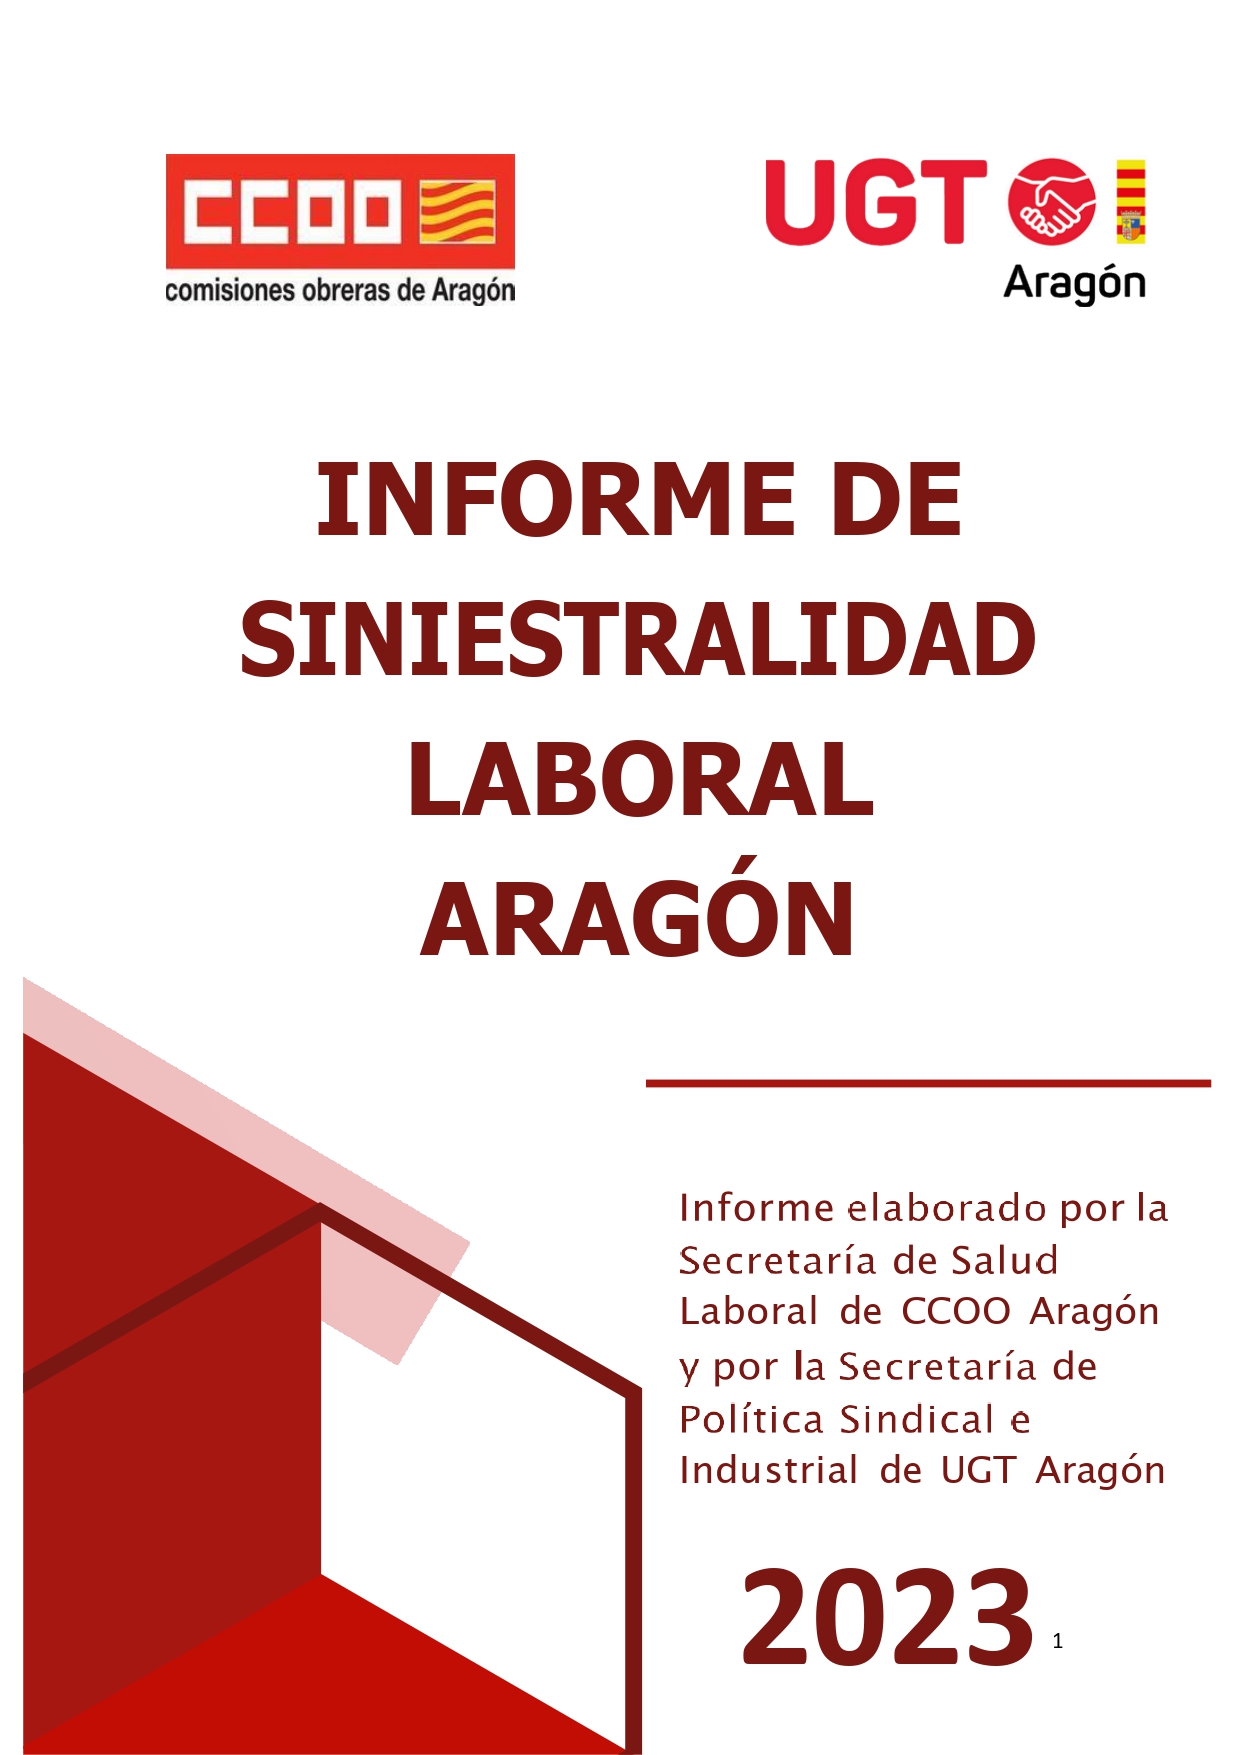 INFORME DE SINIESTRALIDAD LABORAL ARAGÓN 2023